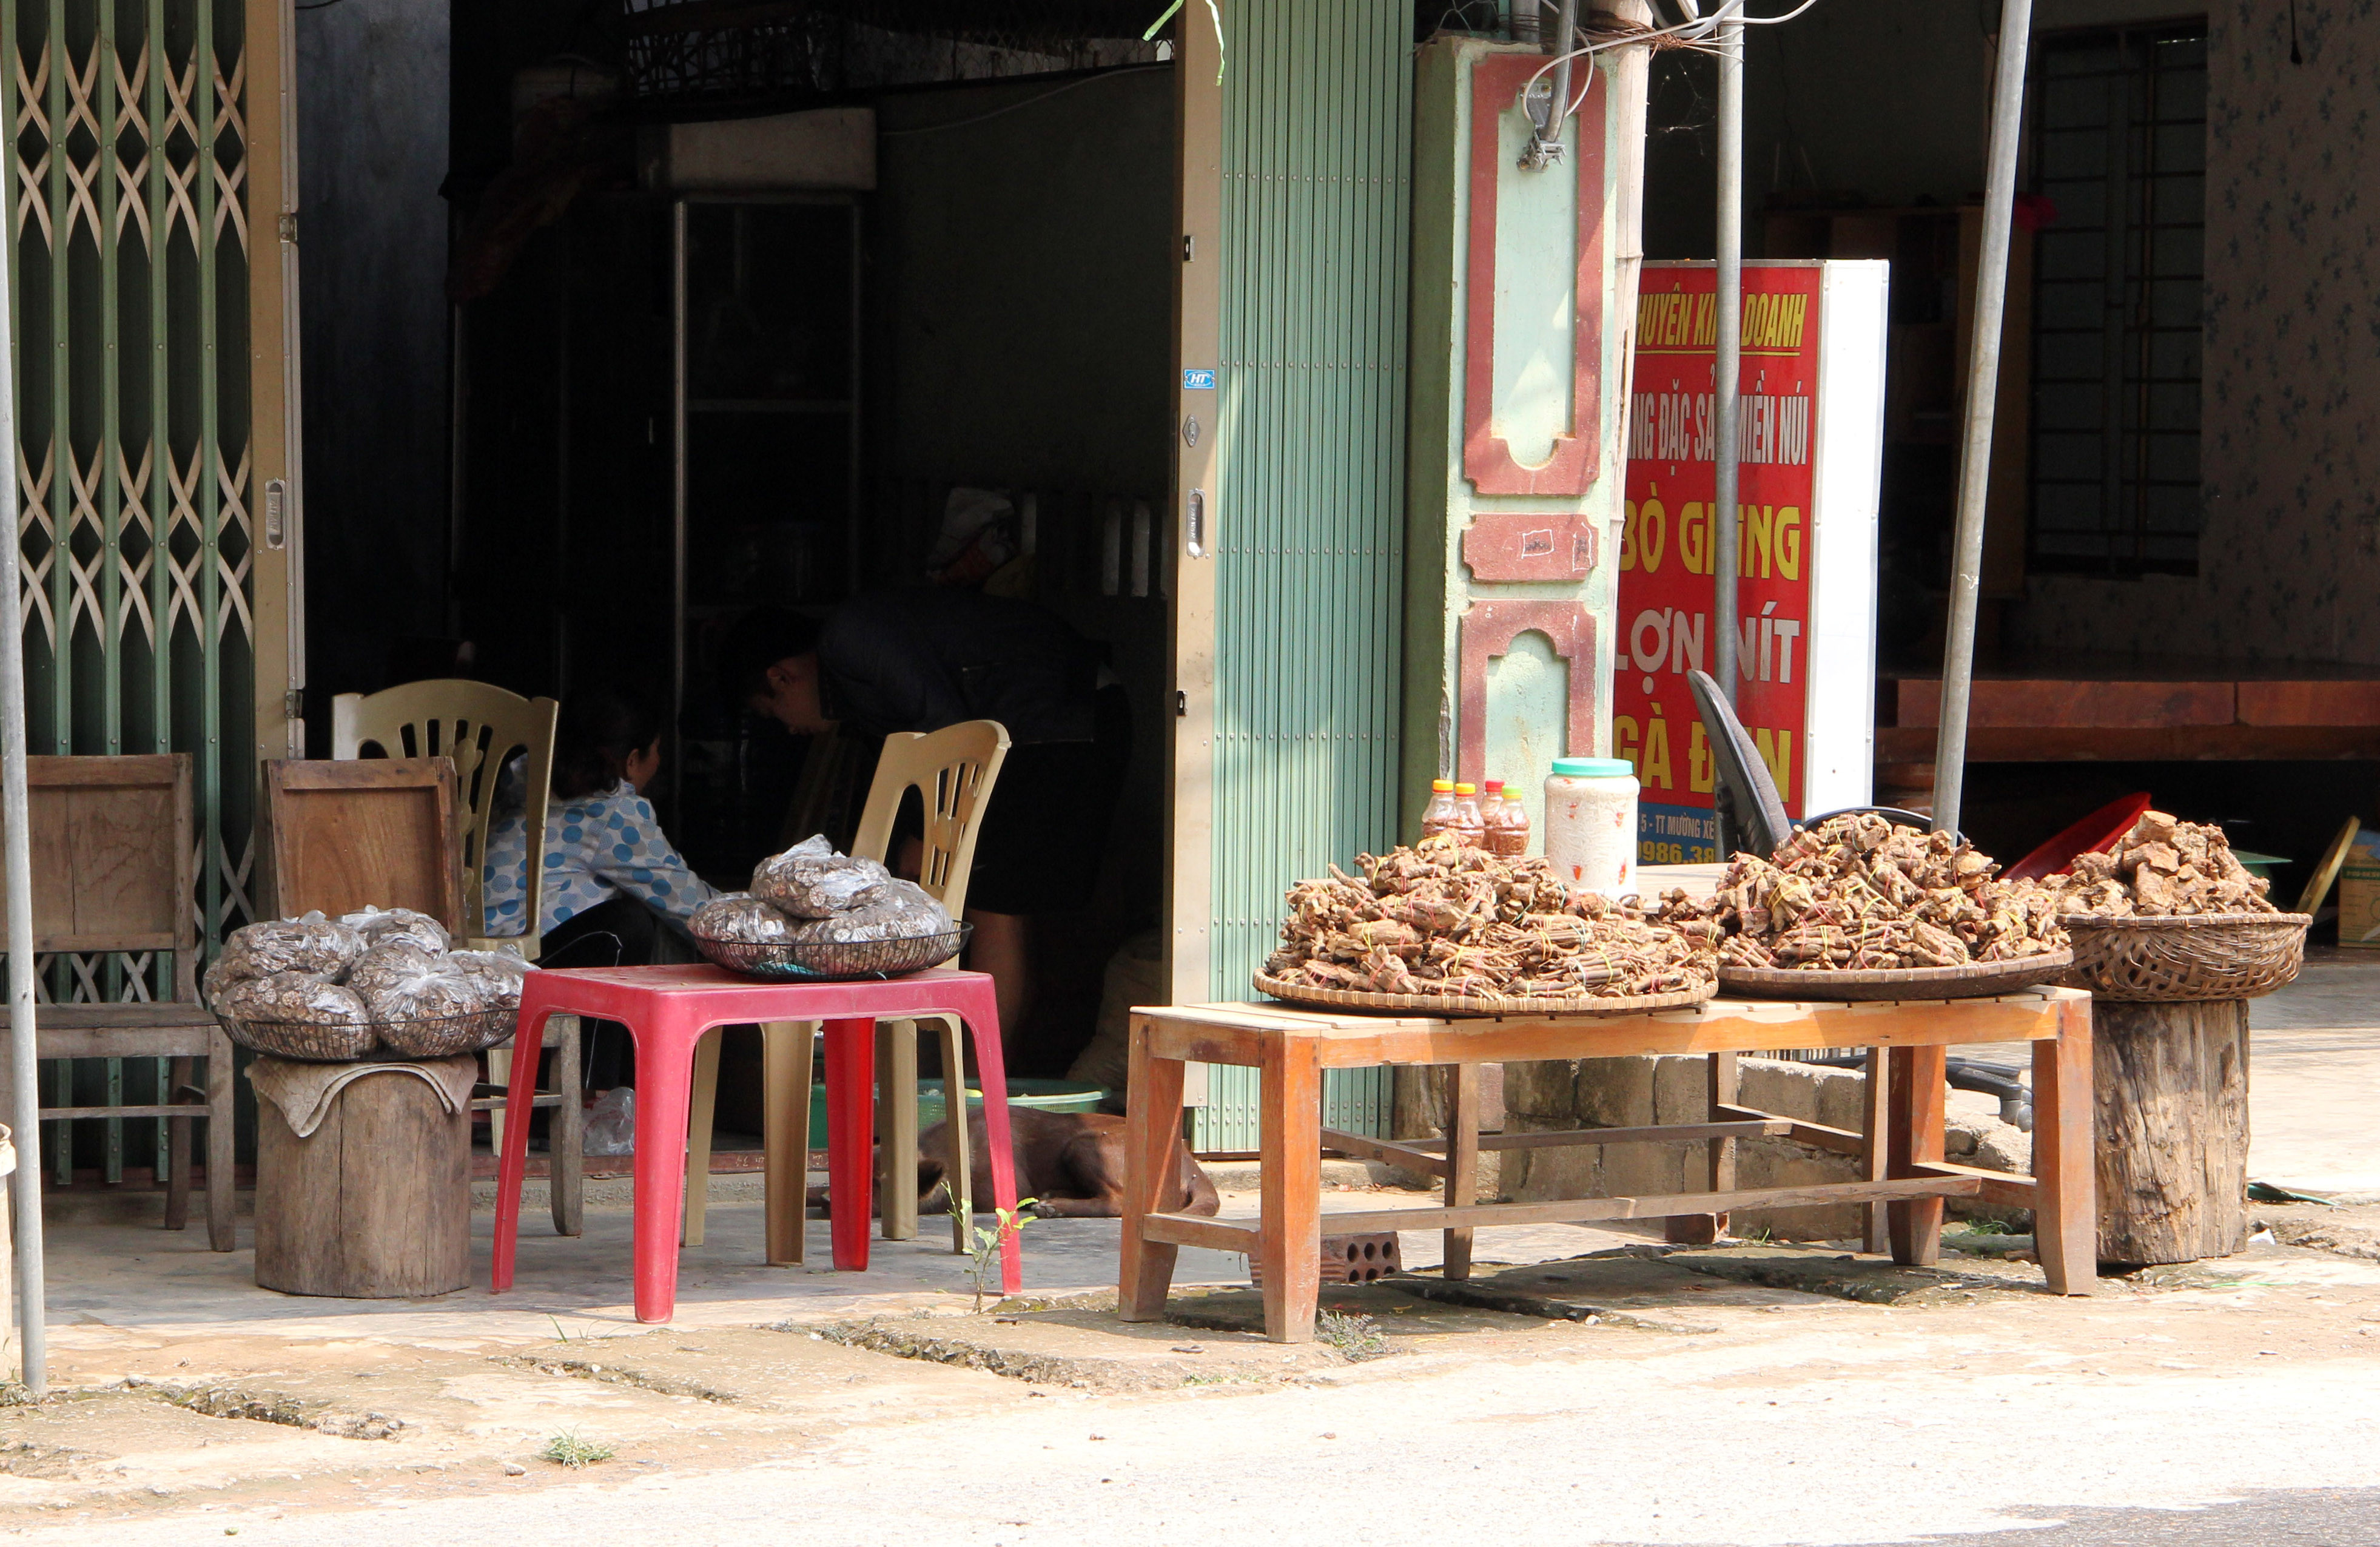 Cây thuốc ngâm rượu được bày bán tại thị trấn Mường Xén huyện Kỳ Sơn. Ảnh Hồ Phương